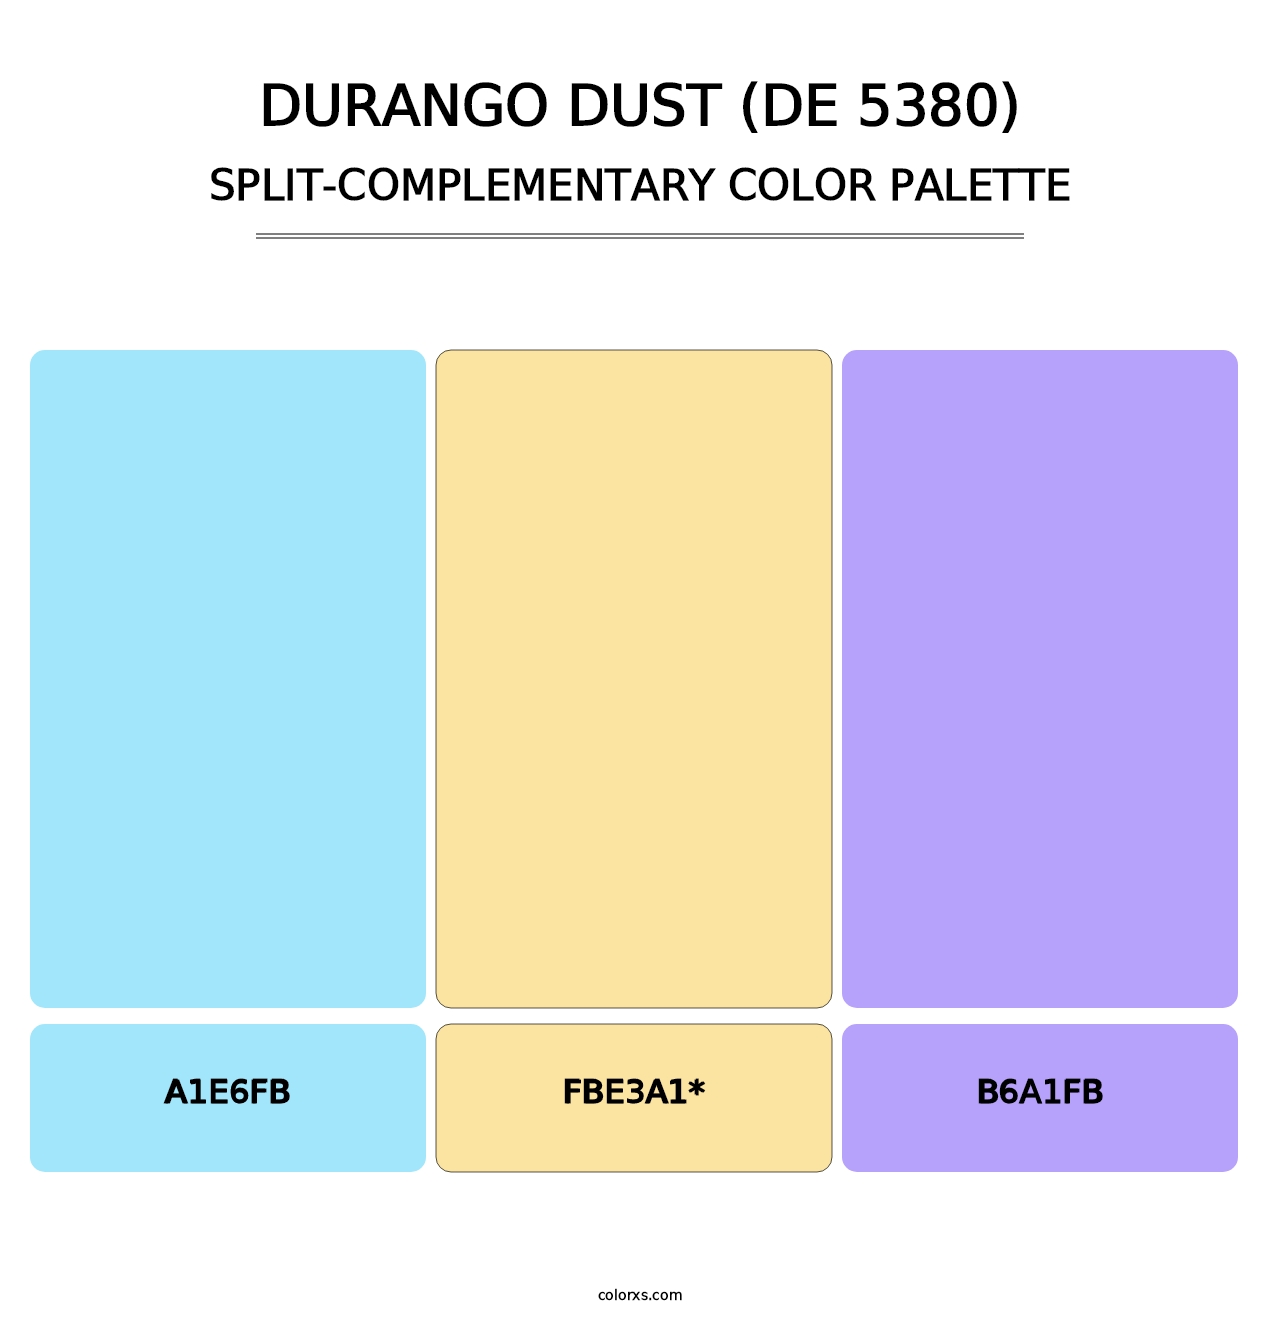 Durango Dust (DE 5380) - Split-Complementary Color Palette